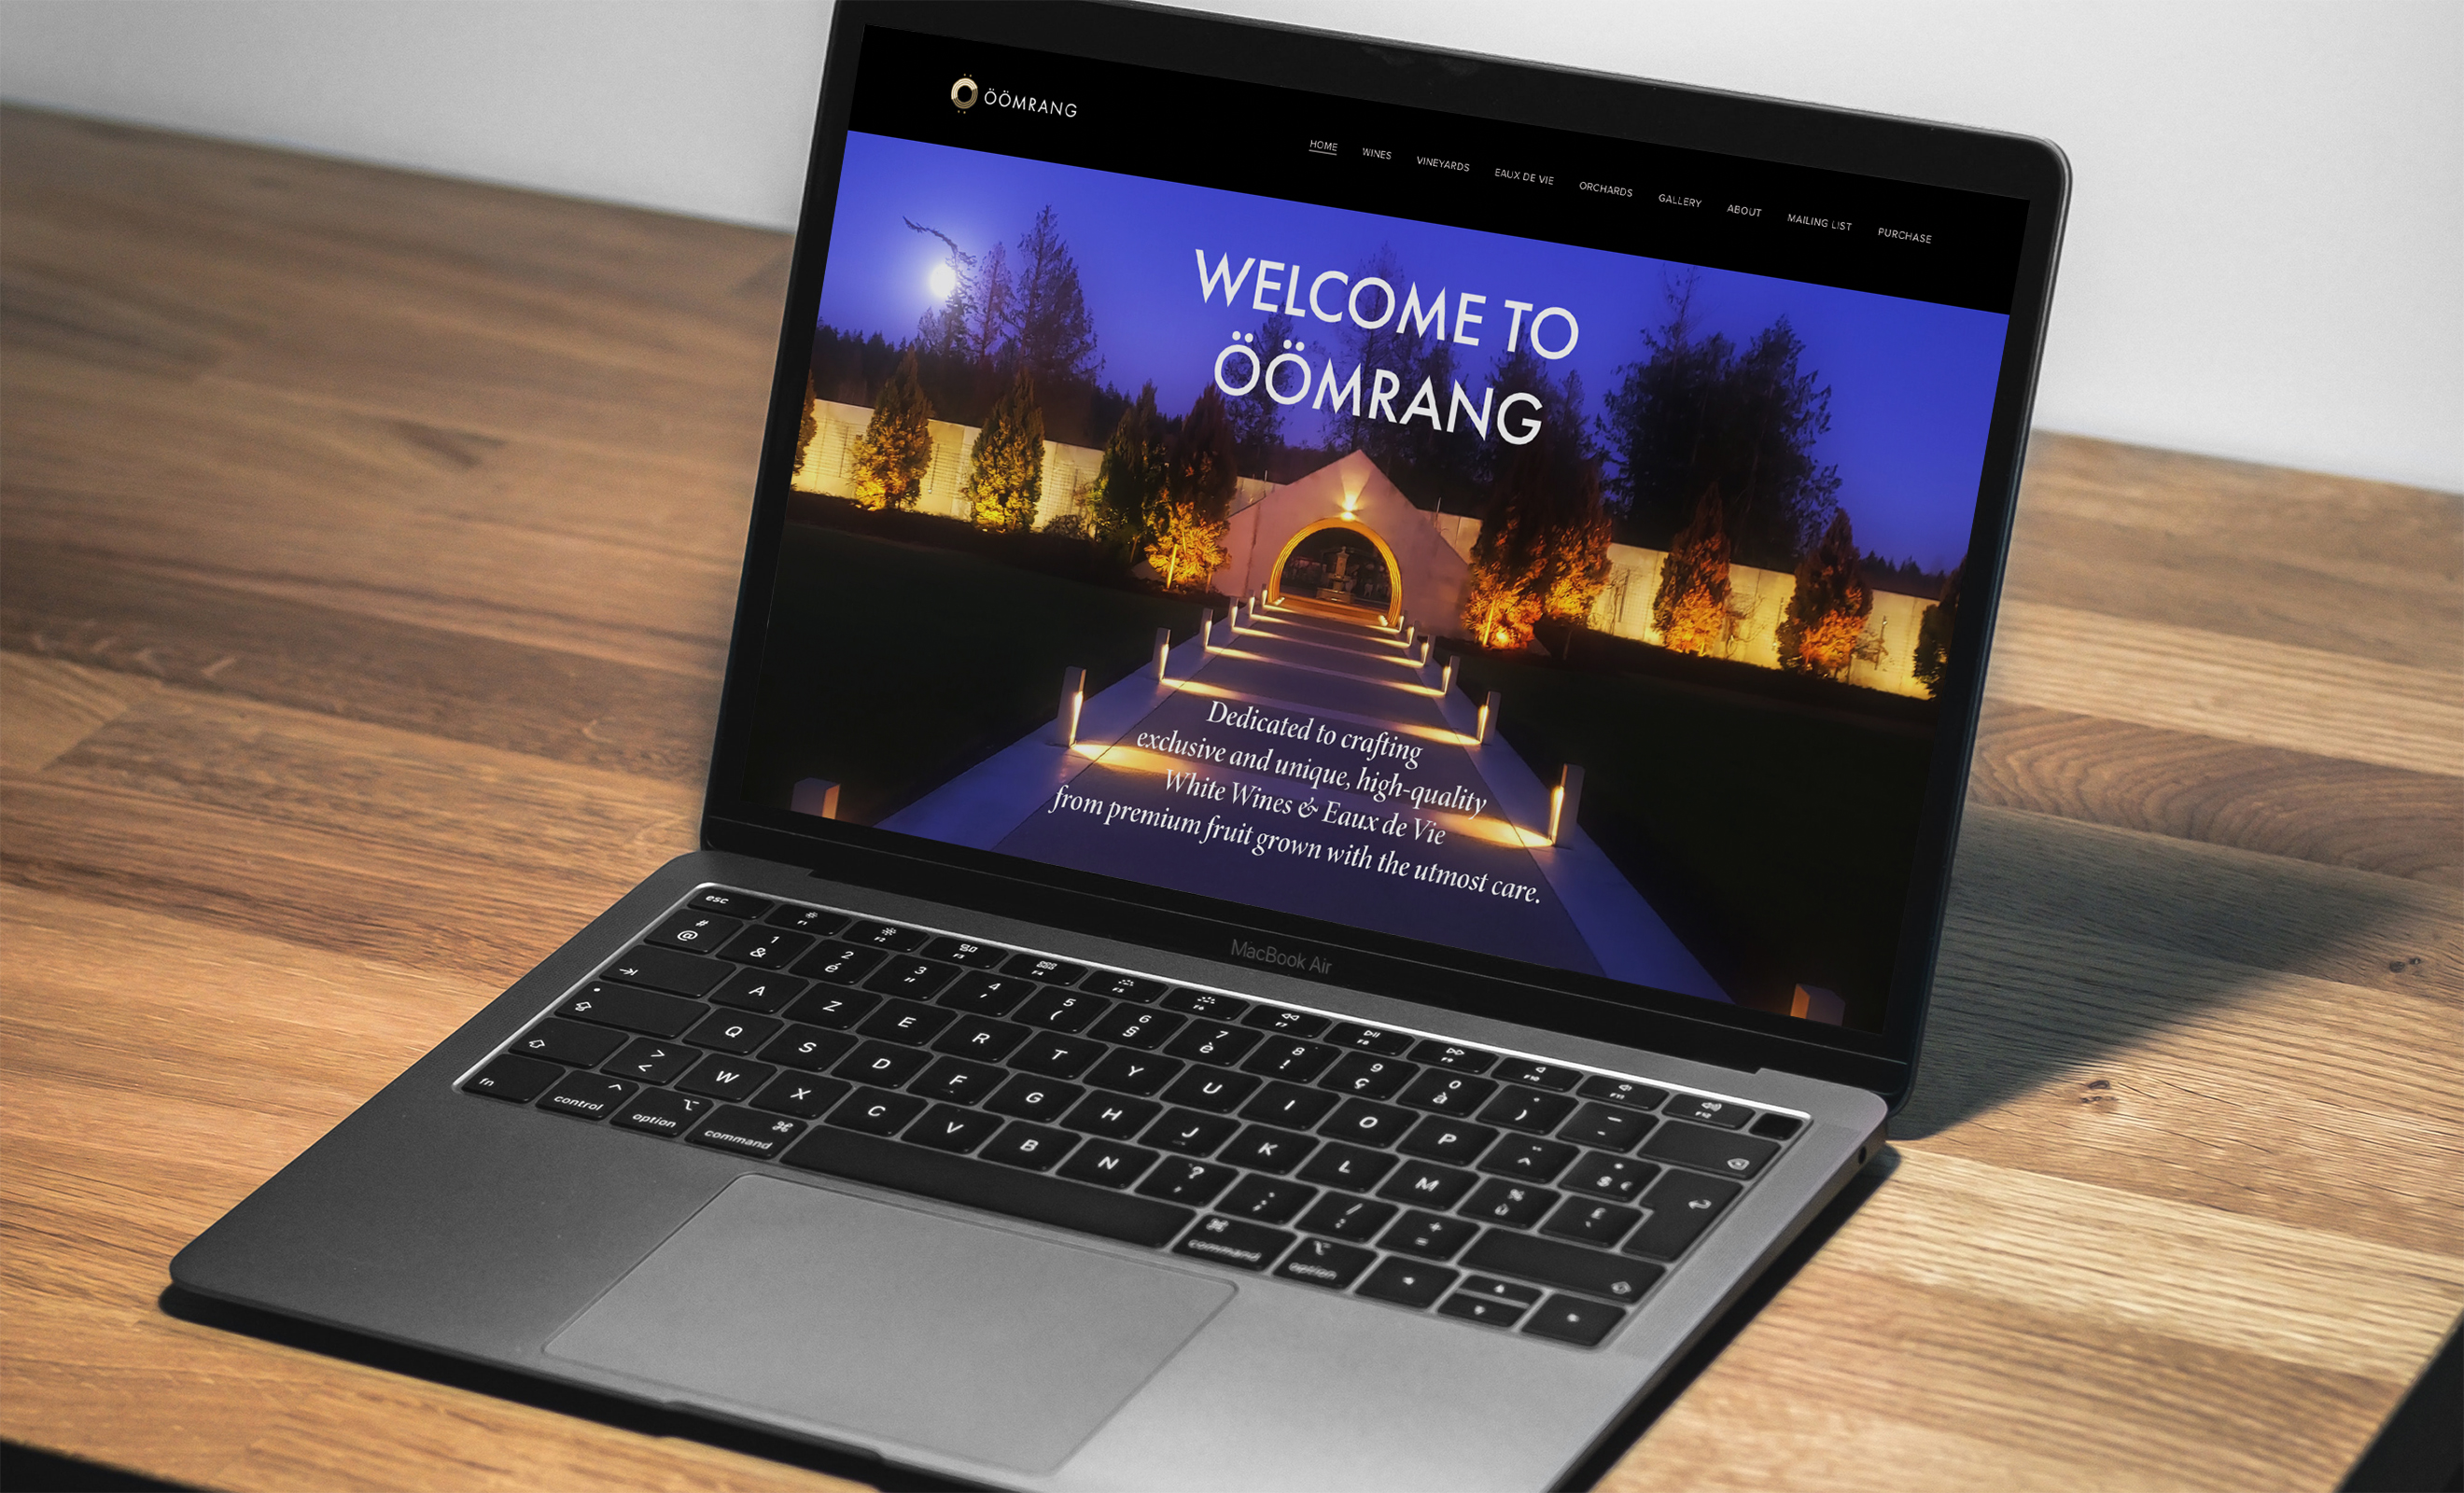 Öömrang Home Page Website Design Shown on Laptop